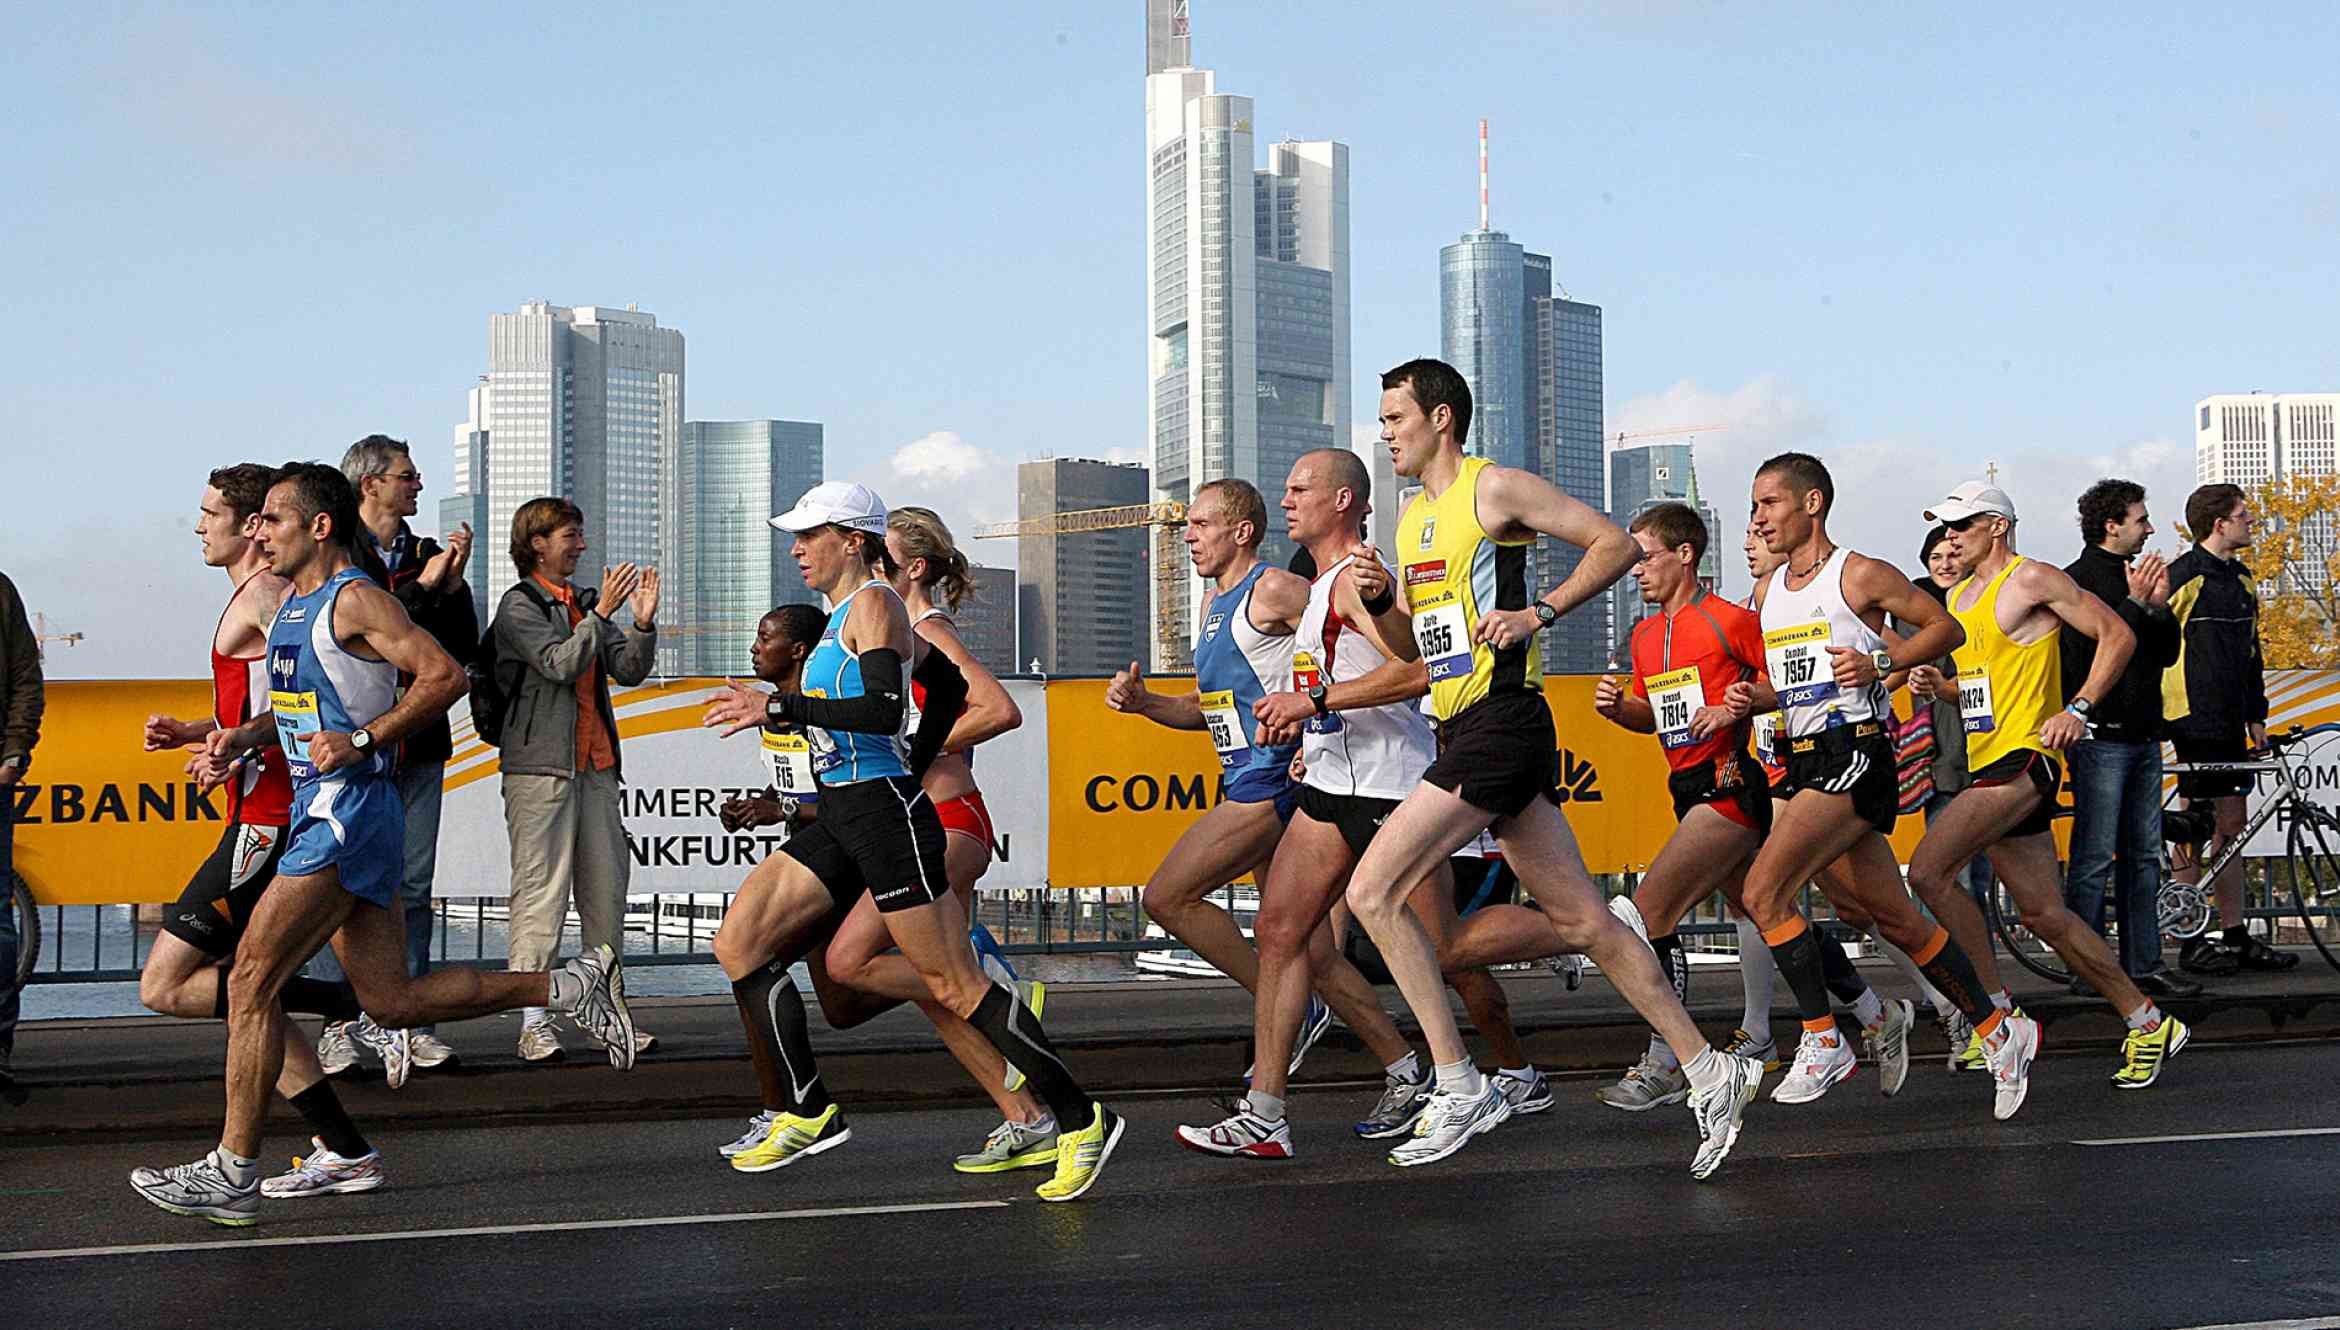  Maratonul de la Frankfurt programat pentru sfârşitul lui octombrie a fost anulat